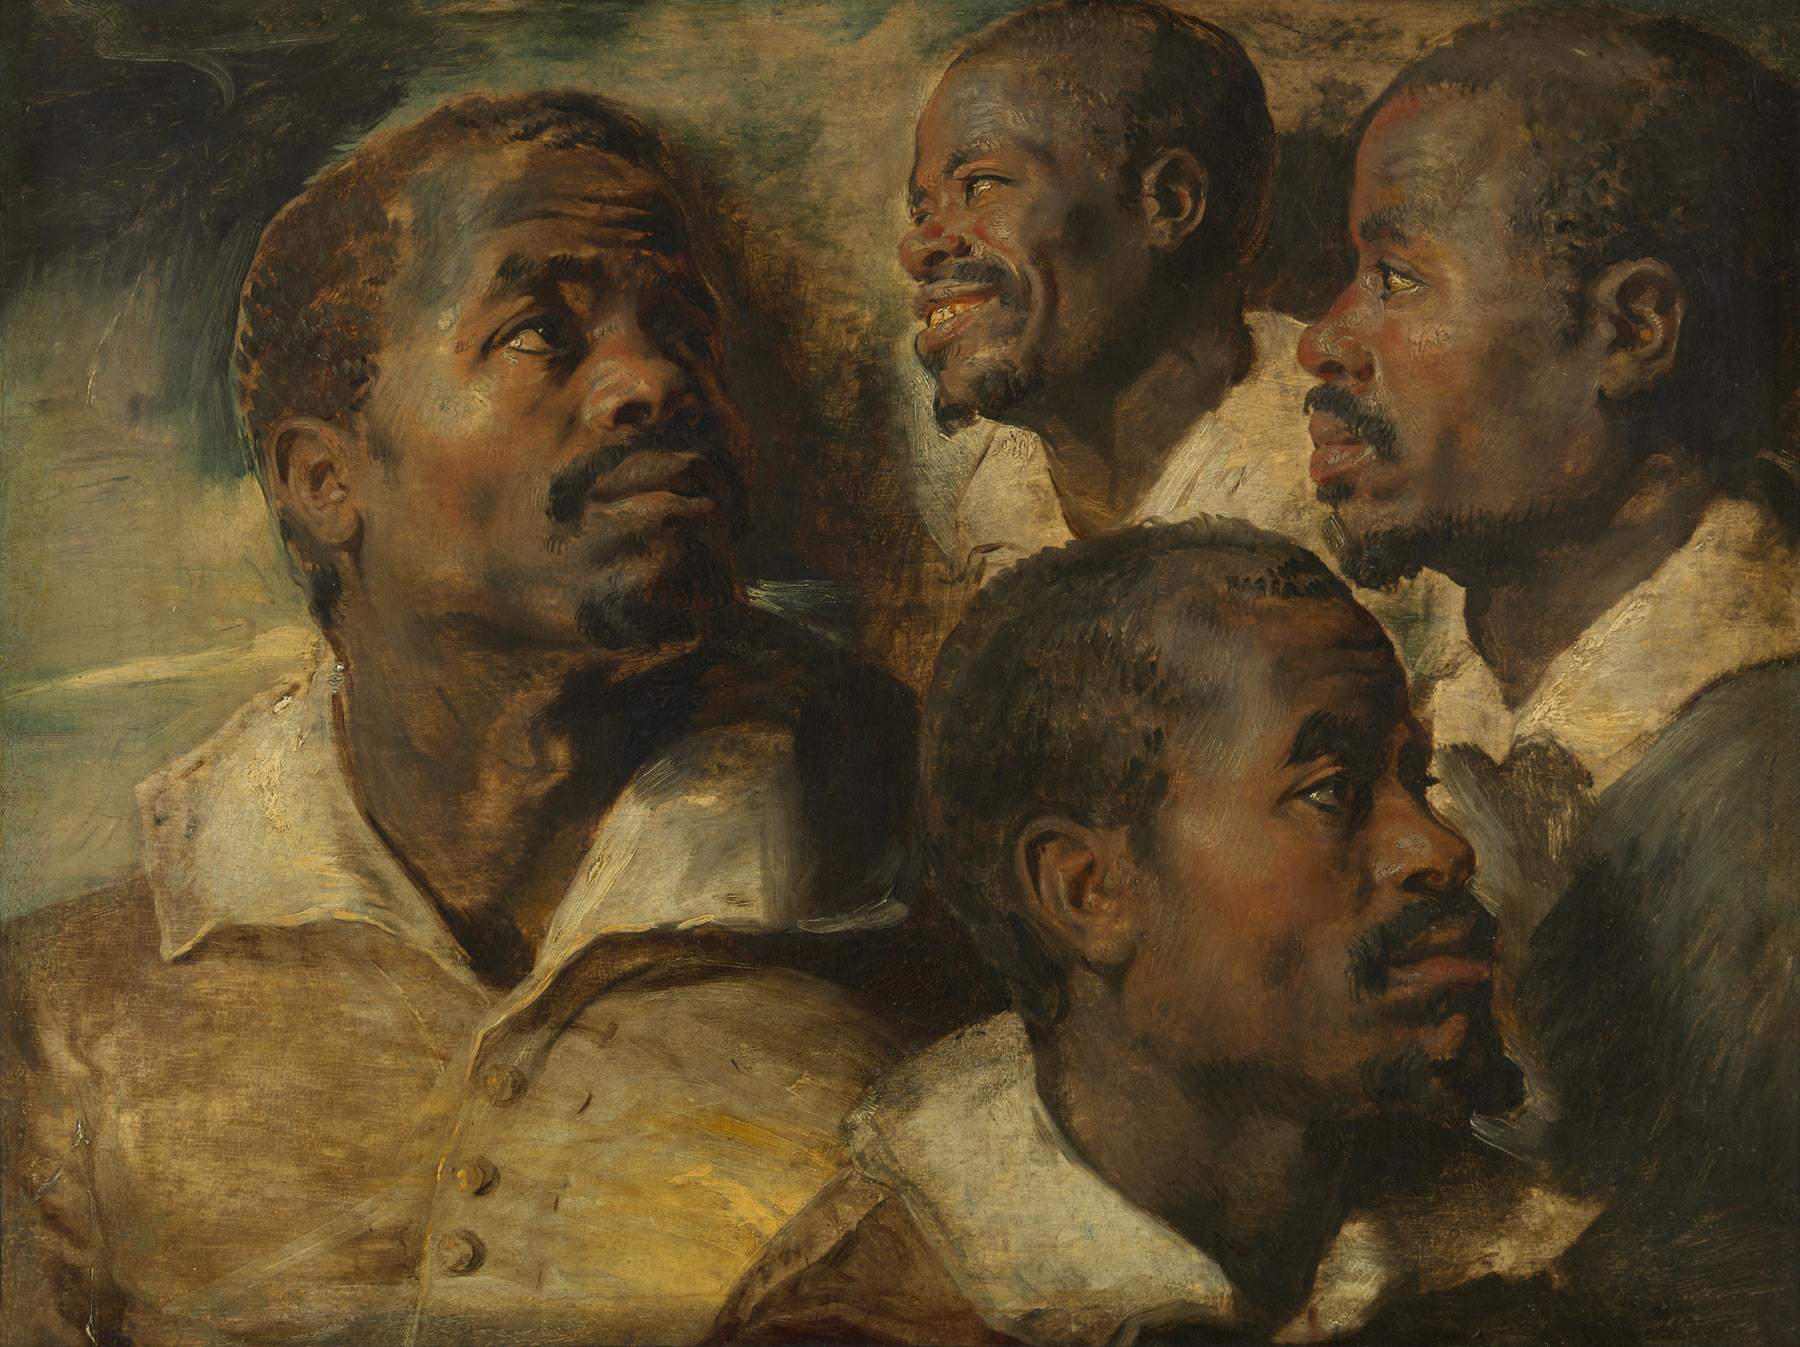 Bruxelles, les Musées Royaux changent le titre d'une œuvre de Rubens : suppression du mot 